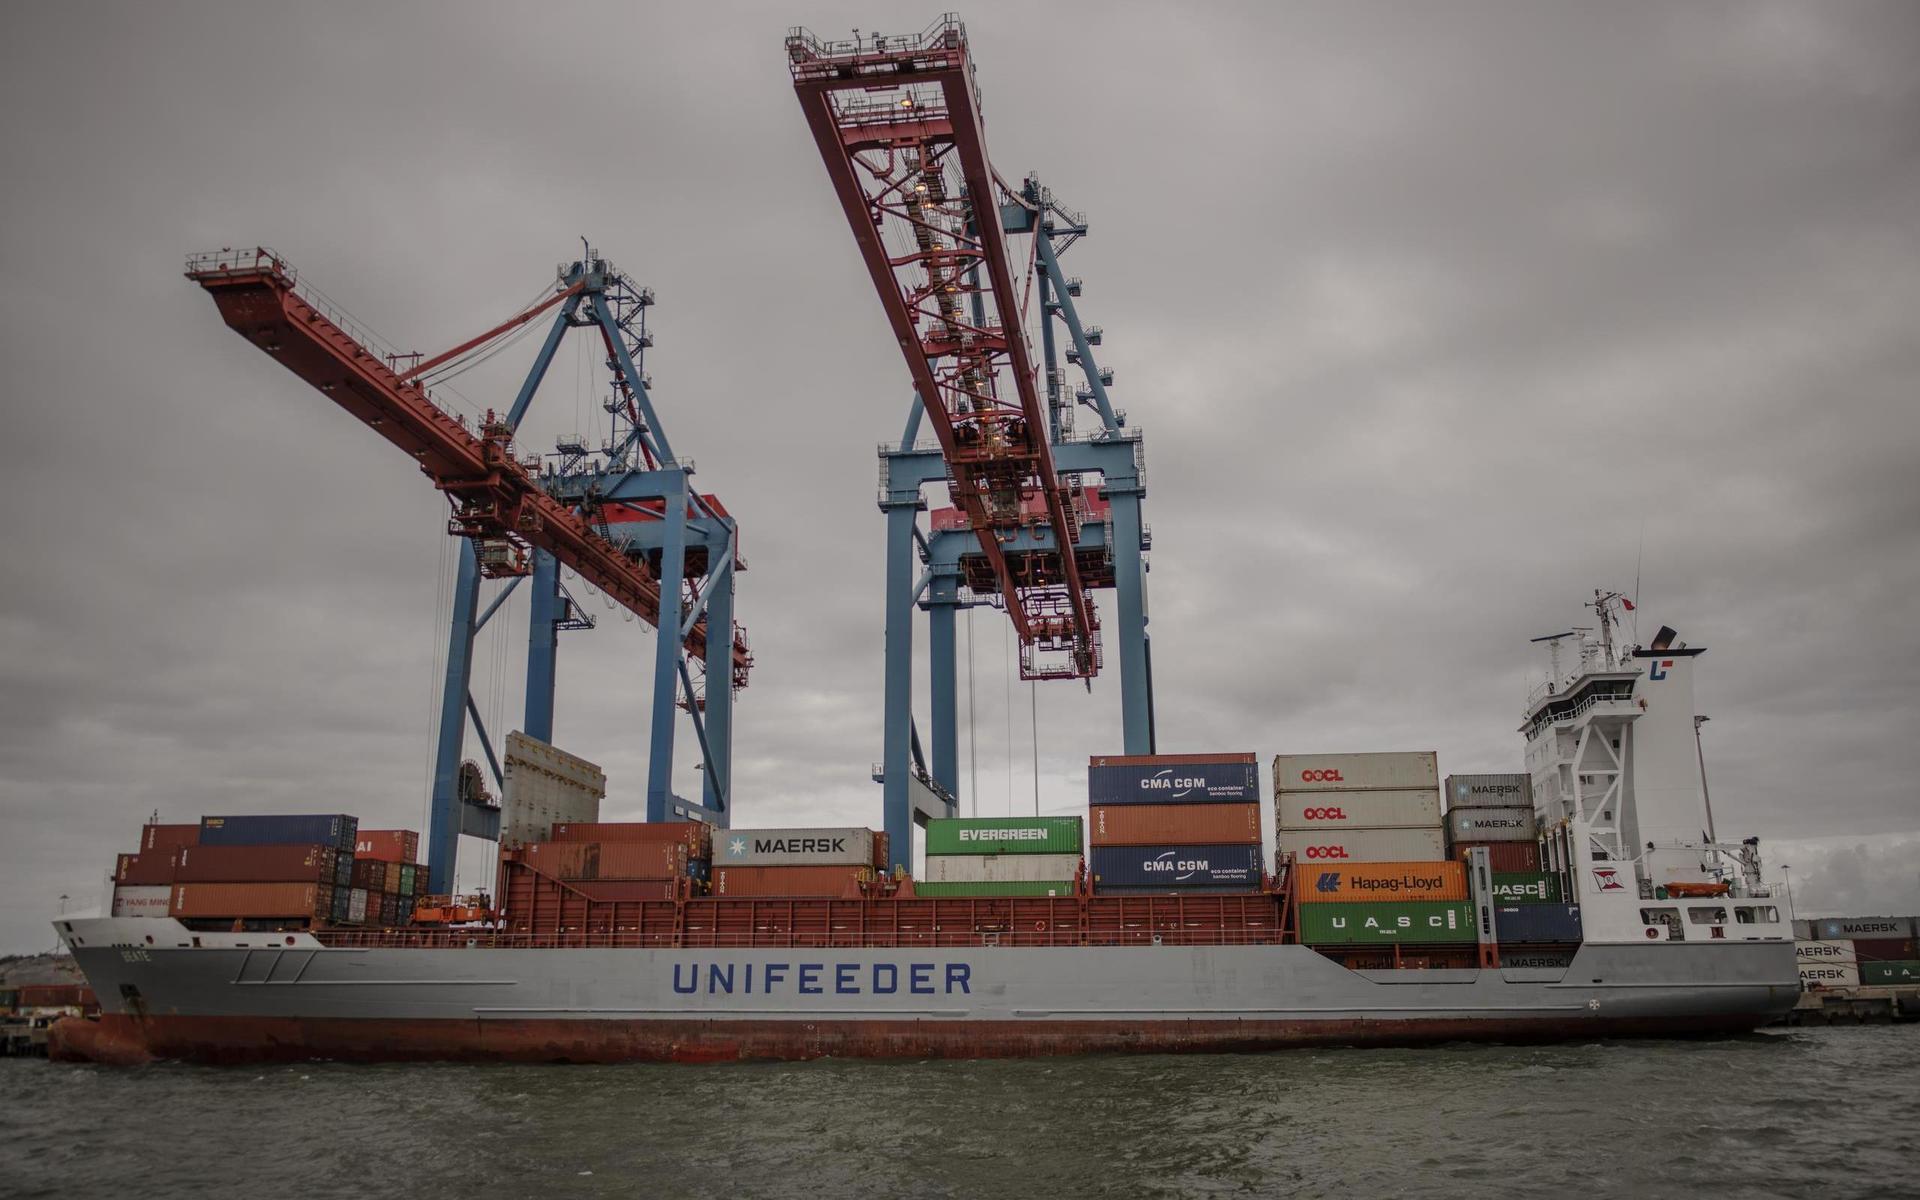 Ett förhållandevis litet containerfartyg – de största är cirka tre gånger större och kan ta uppemot 20 gånger fler containrar än detta.